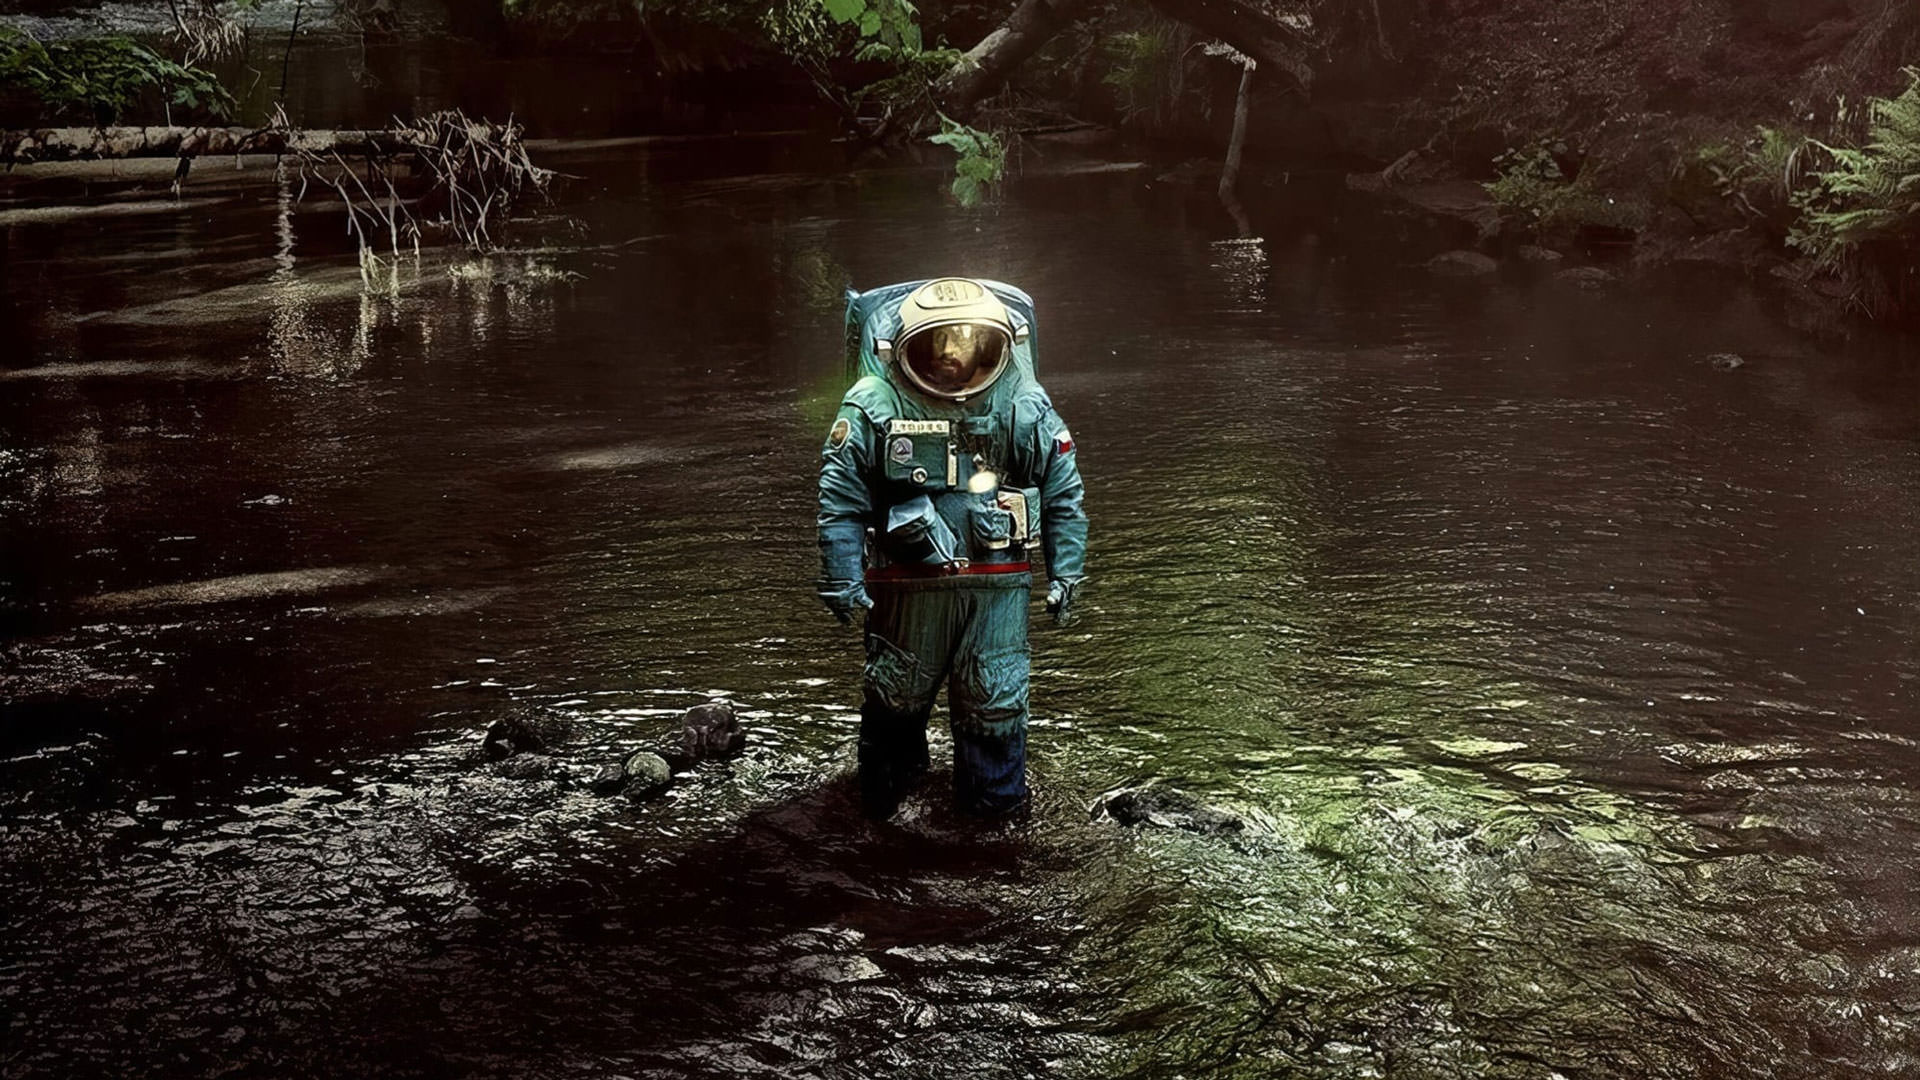 نقد فیلم Spaceman آدام سندلر در فیلم فضایی به کارگردانی چرنوبیل